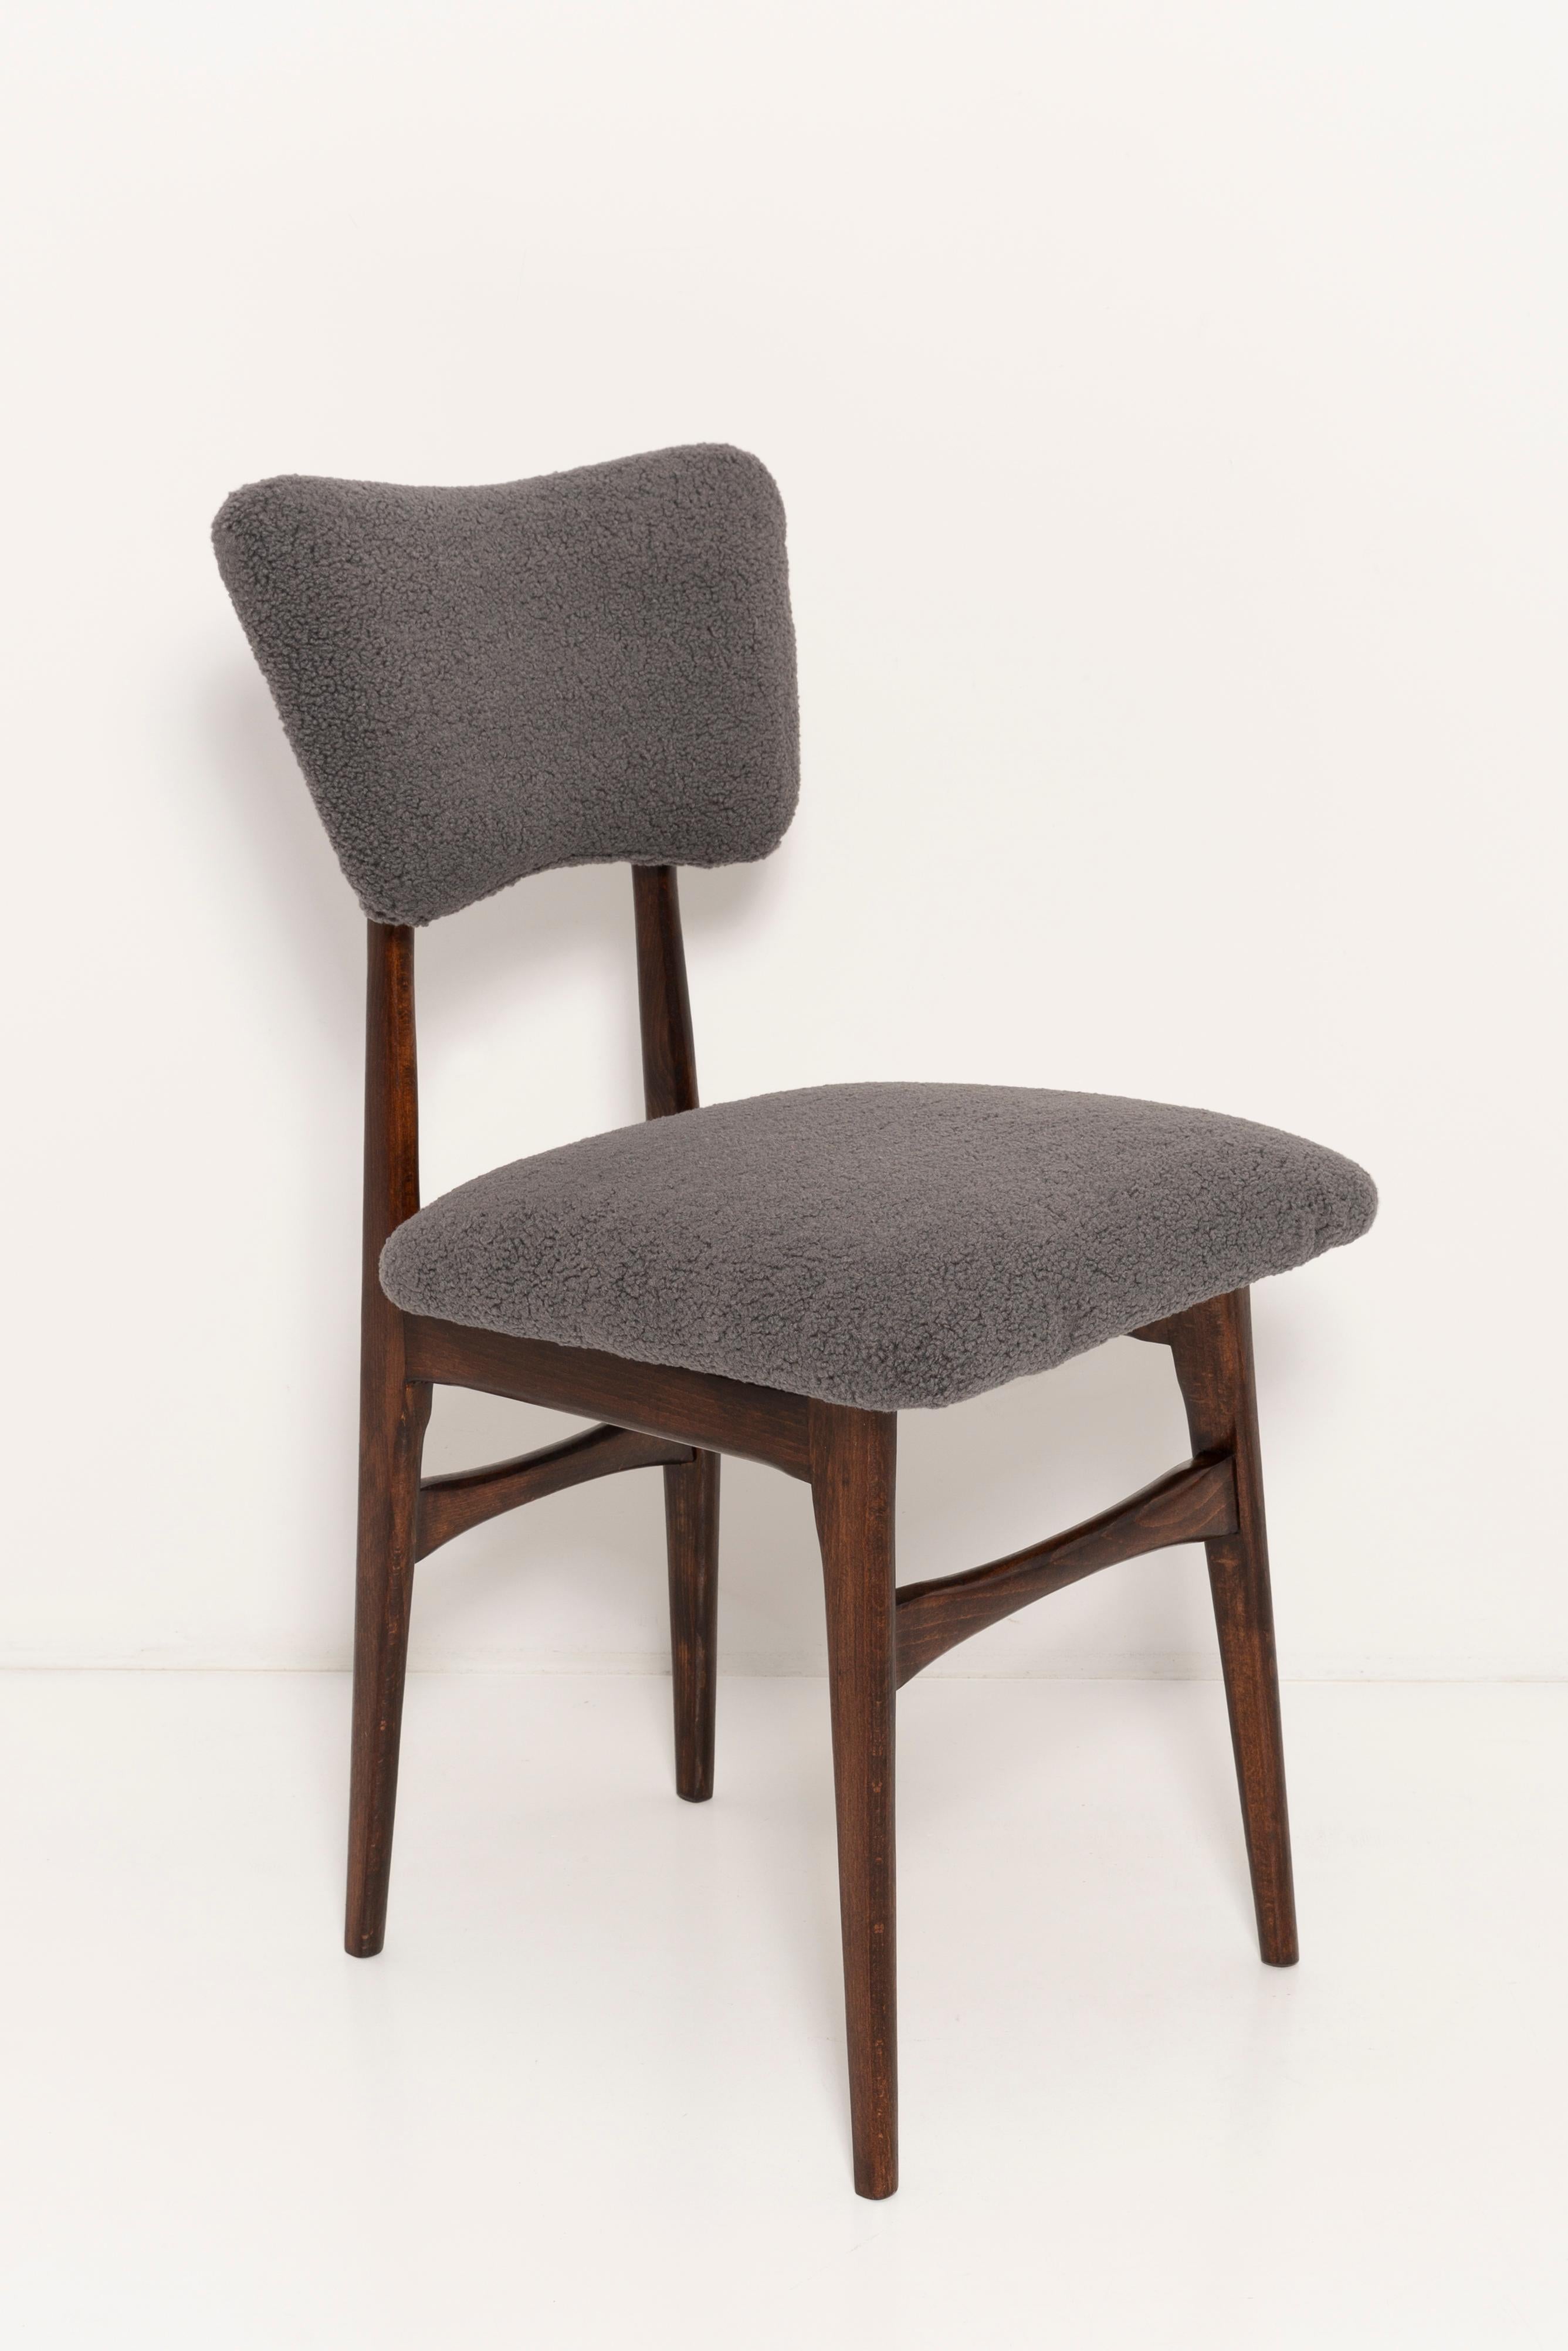 Chaises conçues par le professeur Rajmund Halas. Fabriqué en bois de hêtre. Très belle forme originale de type papillon. Les chaises ont été entièrement rénovées et les boiseries ont été rafraîchies. L'assise et le dossier sont habillés d'un tissu